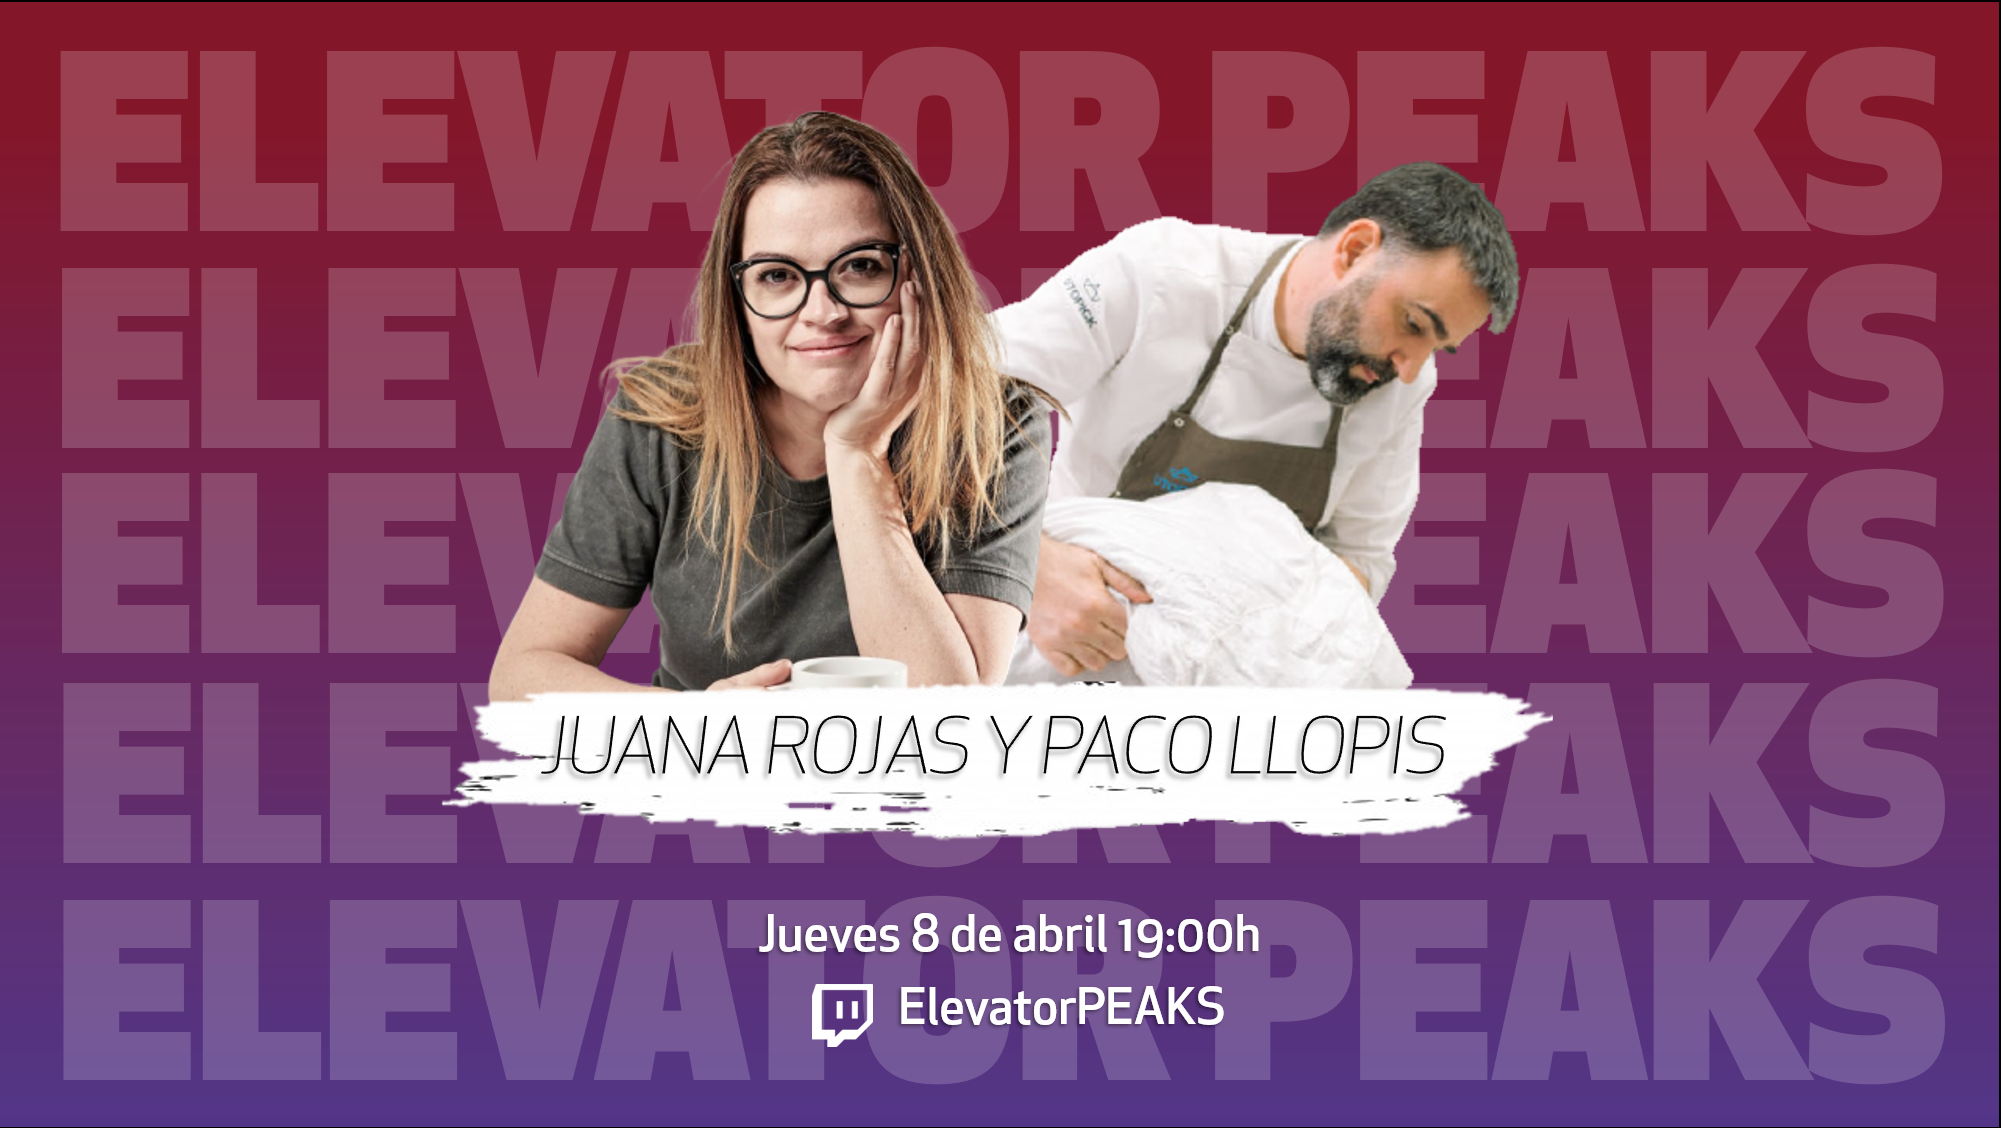 5 Protagonistas Juana Rojas Y Paco Llopis Fundadores De Utopick El Mejor Chocolate 7239